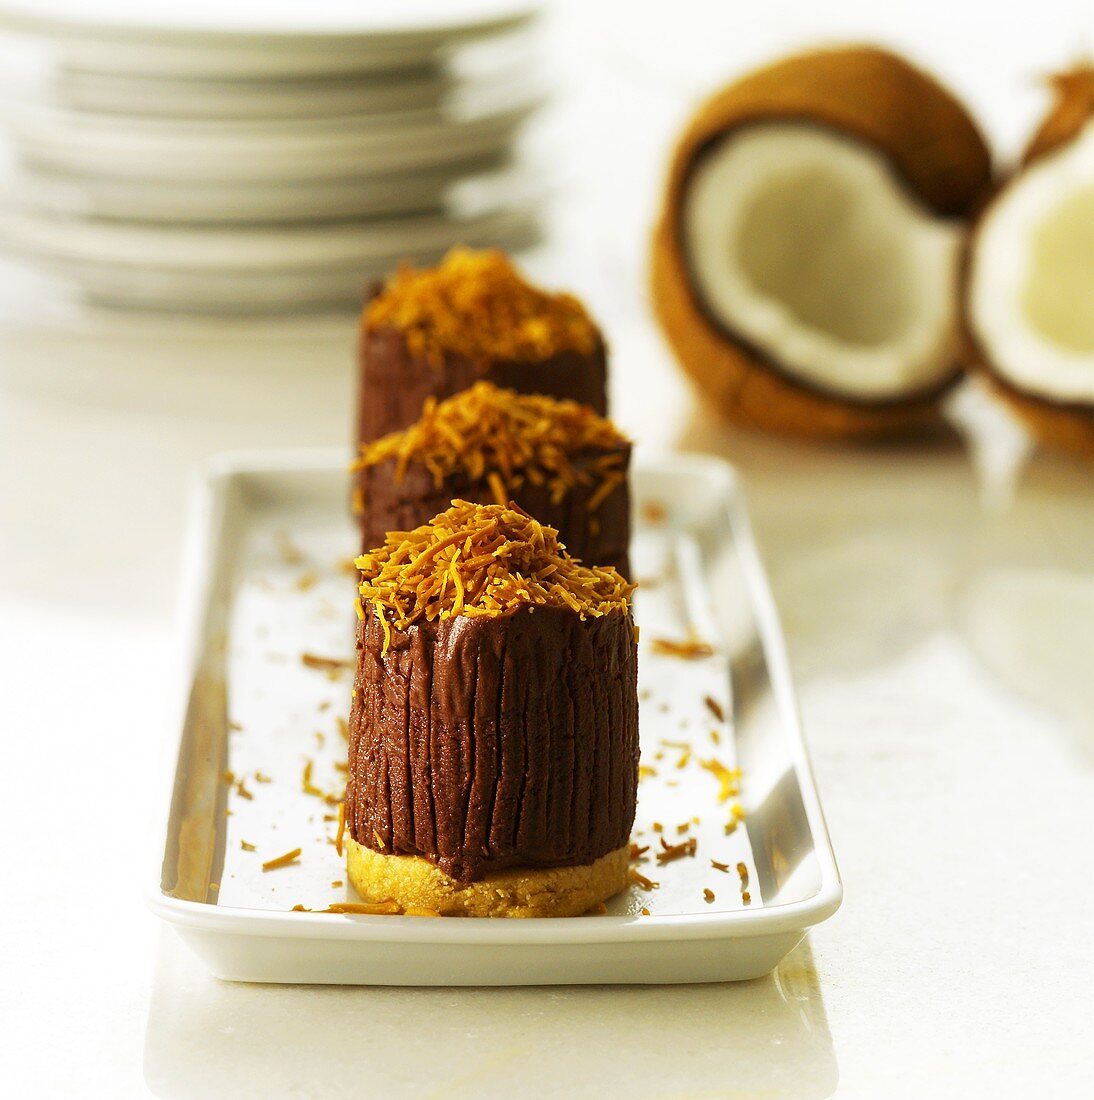 Mousse au chocolat auf Mürbeteigboden mit Kokosraspeln